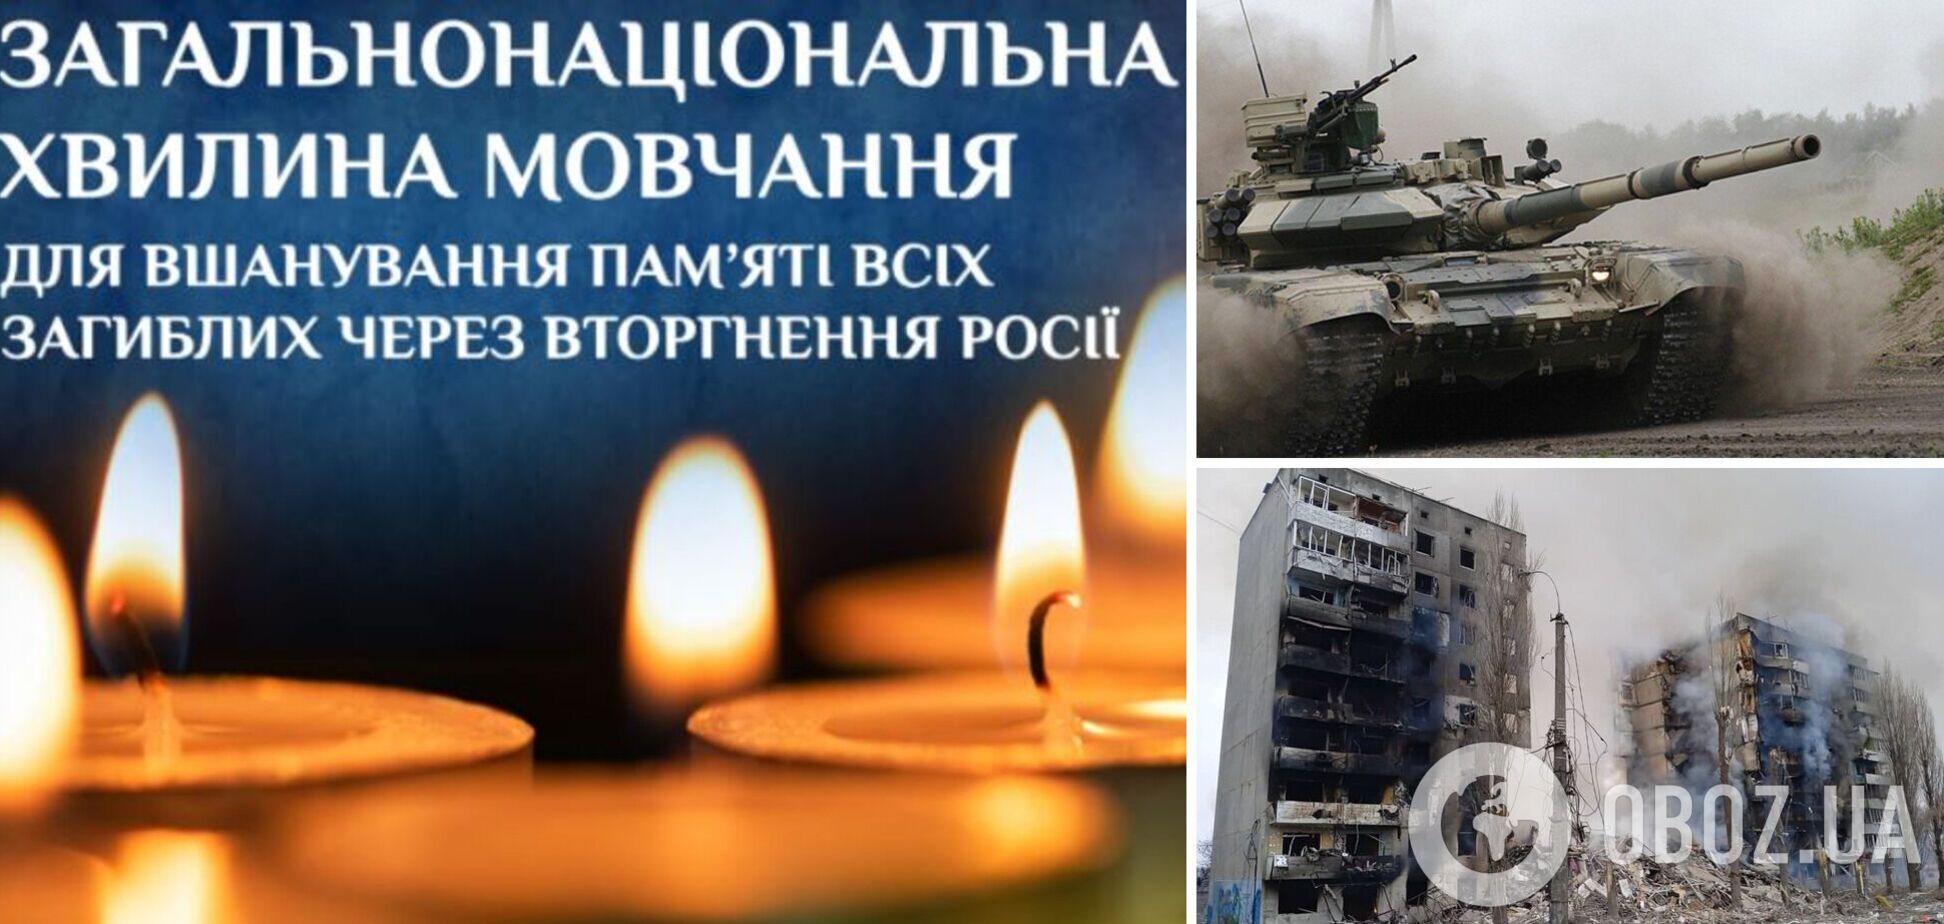 В Україні вшанували пам'ять усіх загиблих від рук окупантів